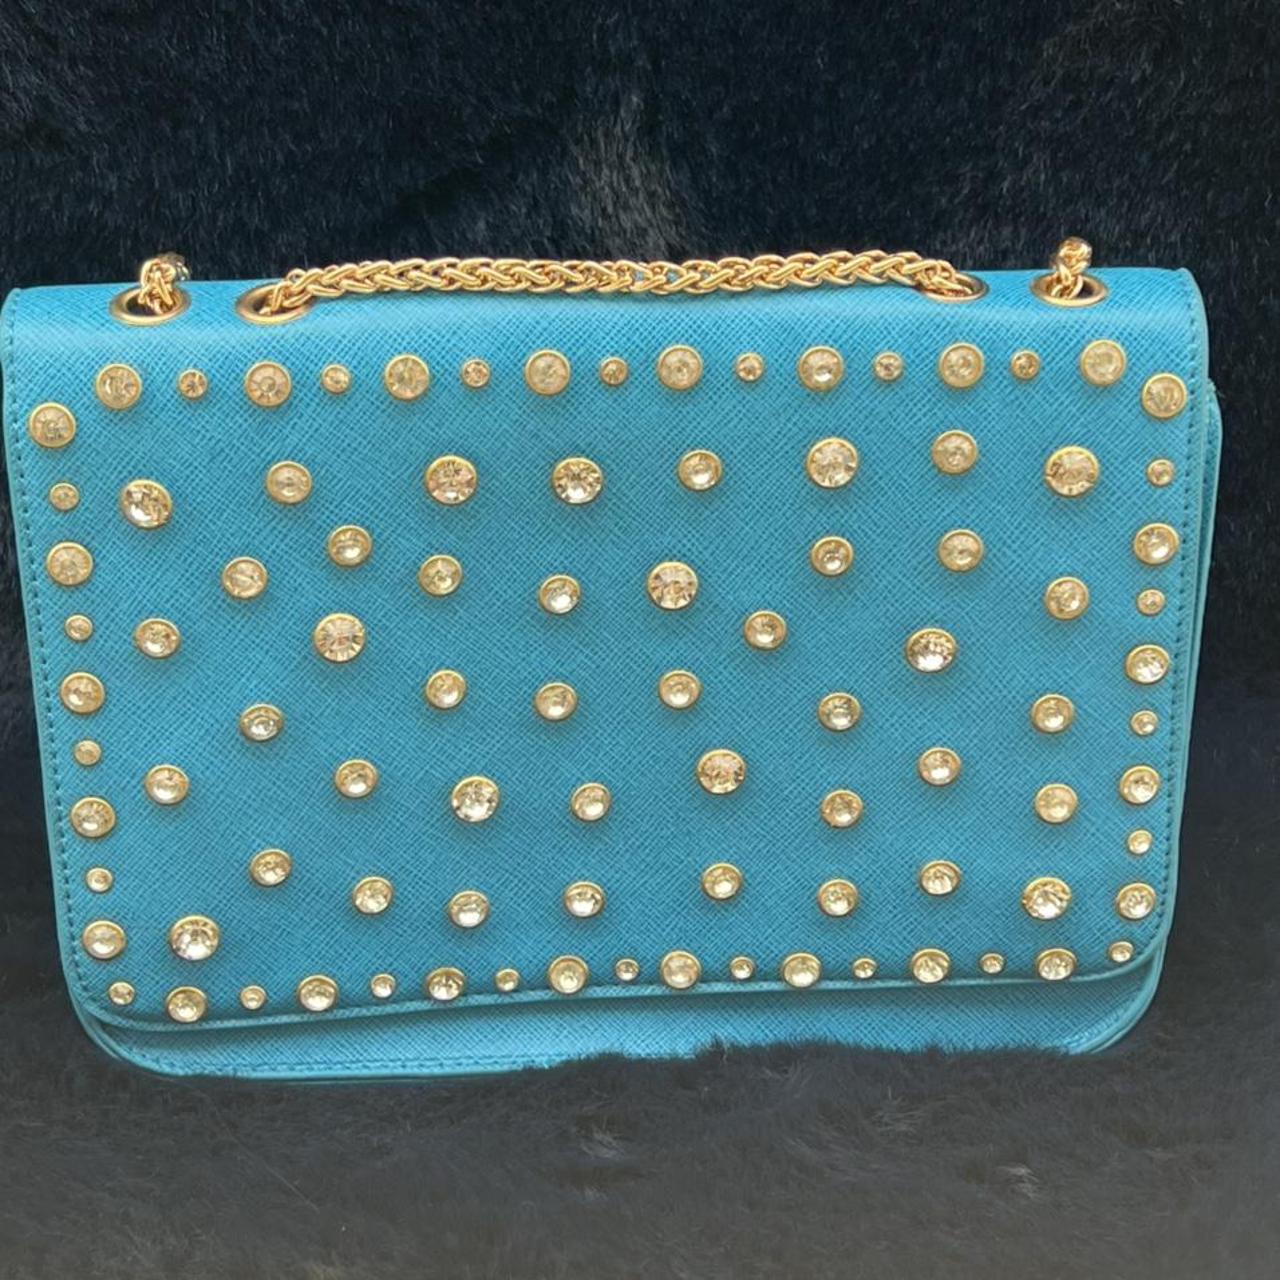 Stunning New Turquoise Blue Women Hand Bag Purse ... - Depop